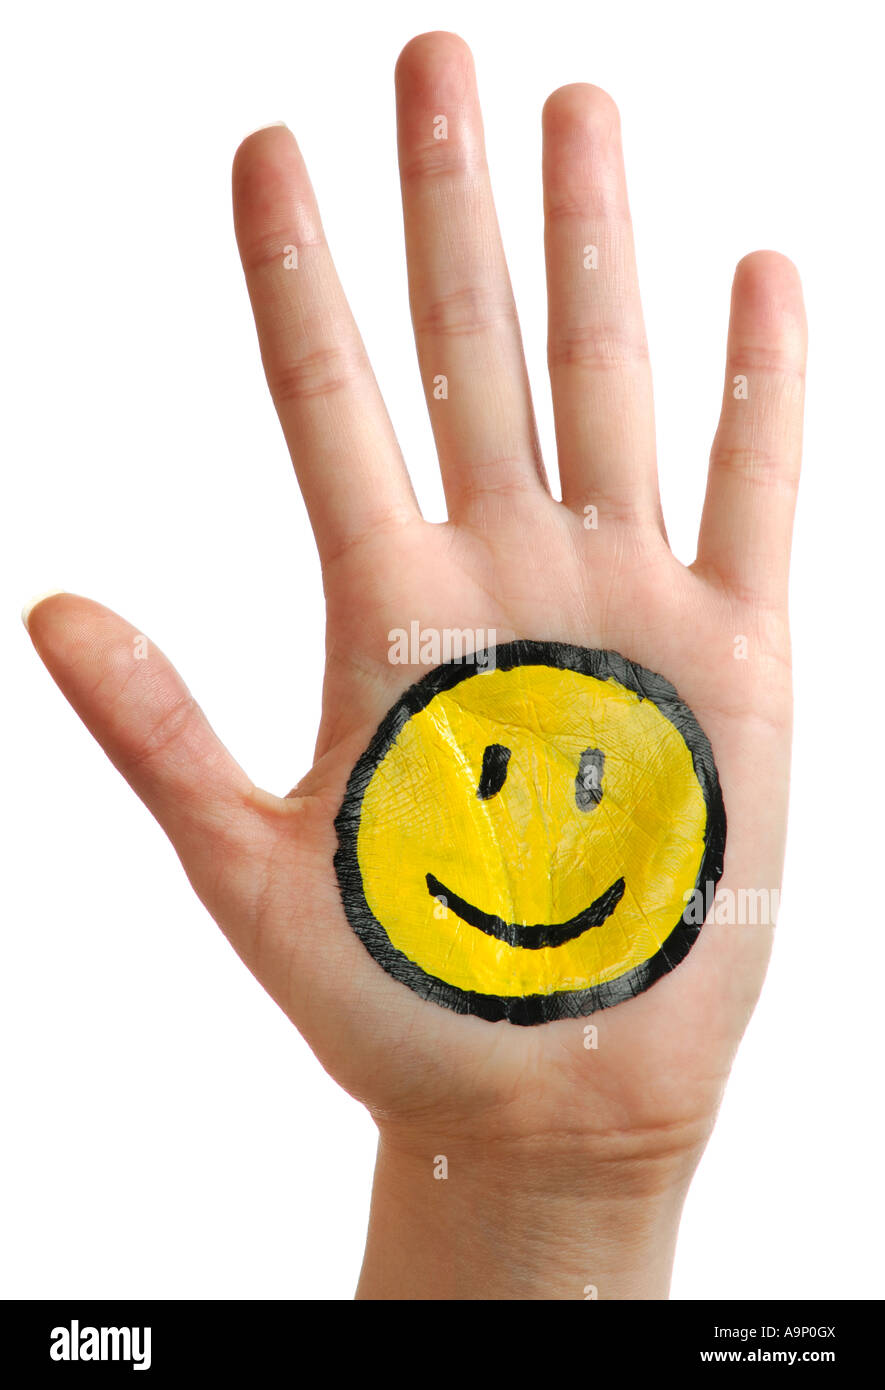 La main avec un sourire heureux Banque D'Images